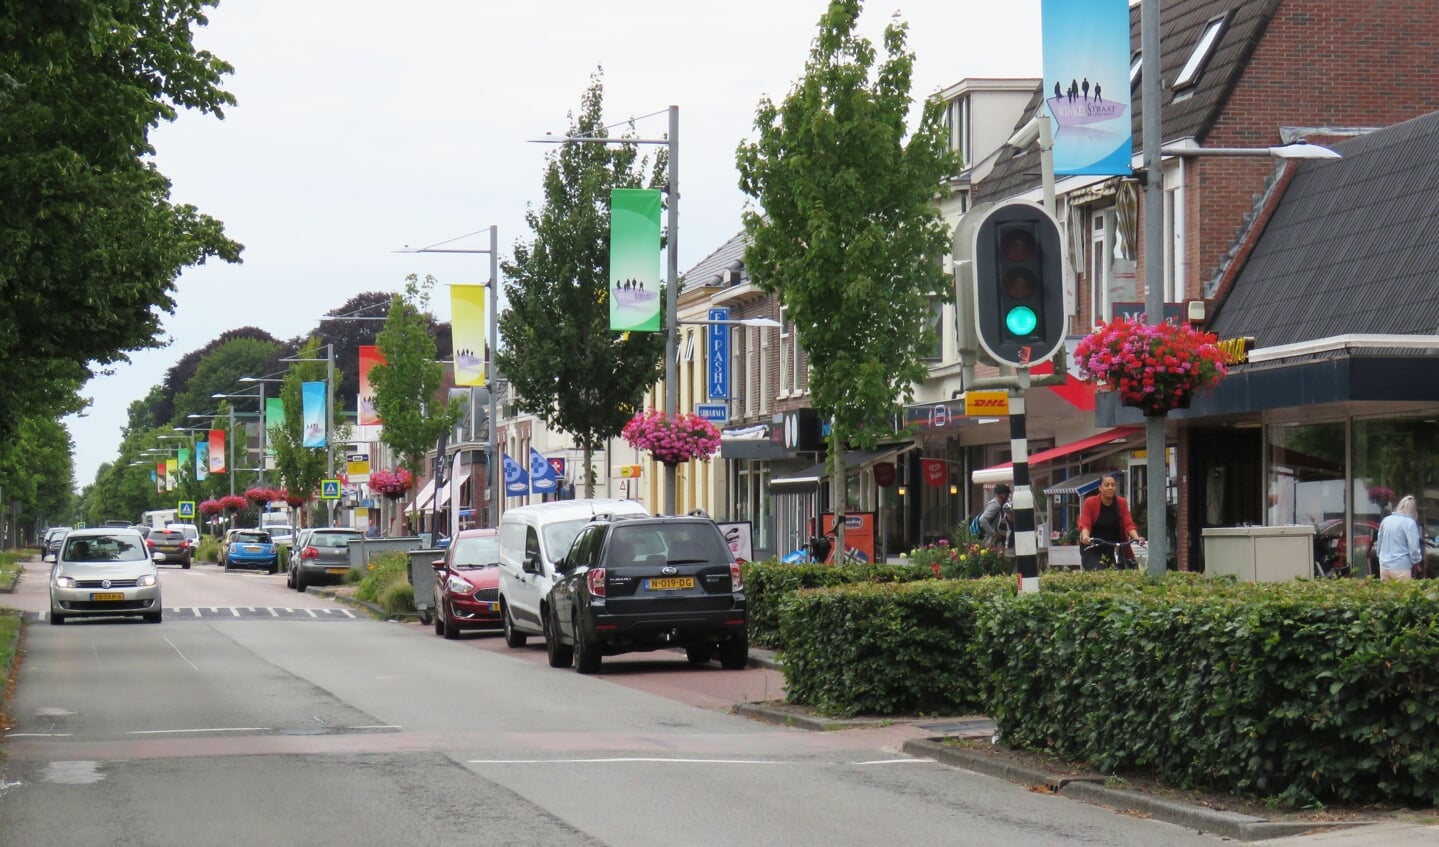 De Noorderstraat is een gezellige winkelstraat en dat moet zo blijven, vinden de Sappemeersters.